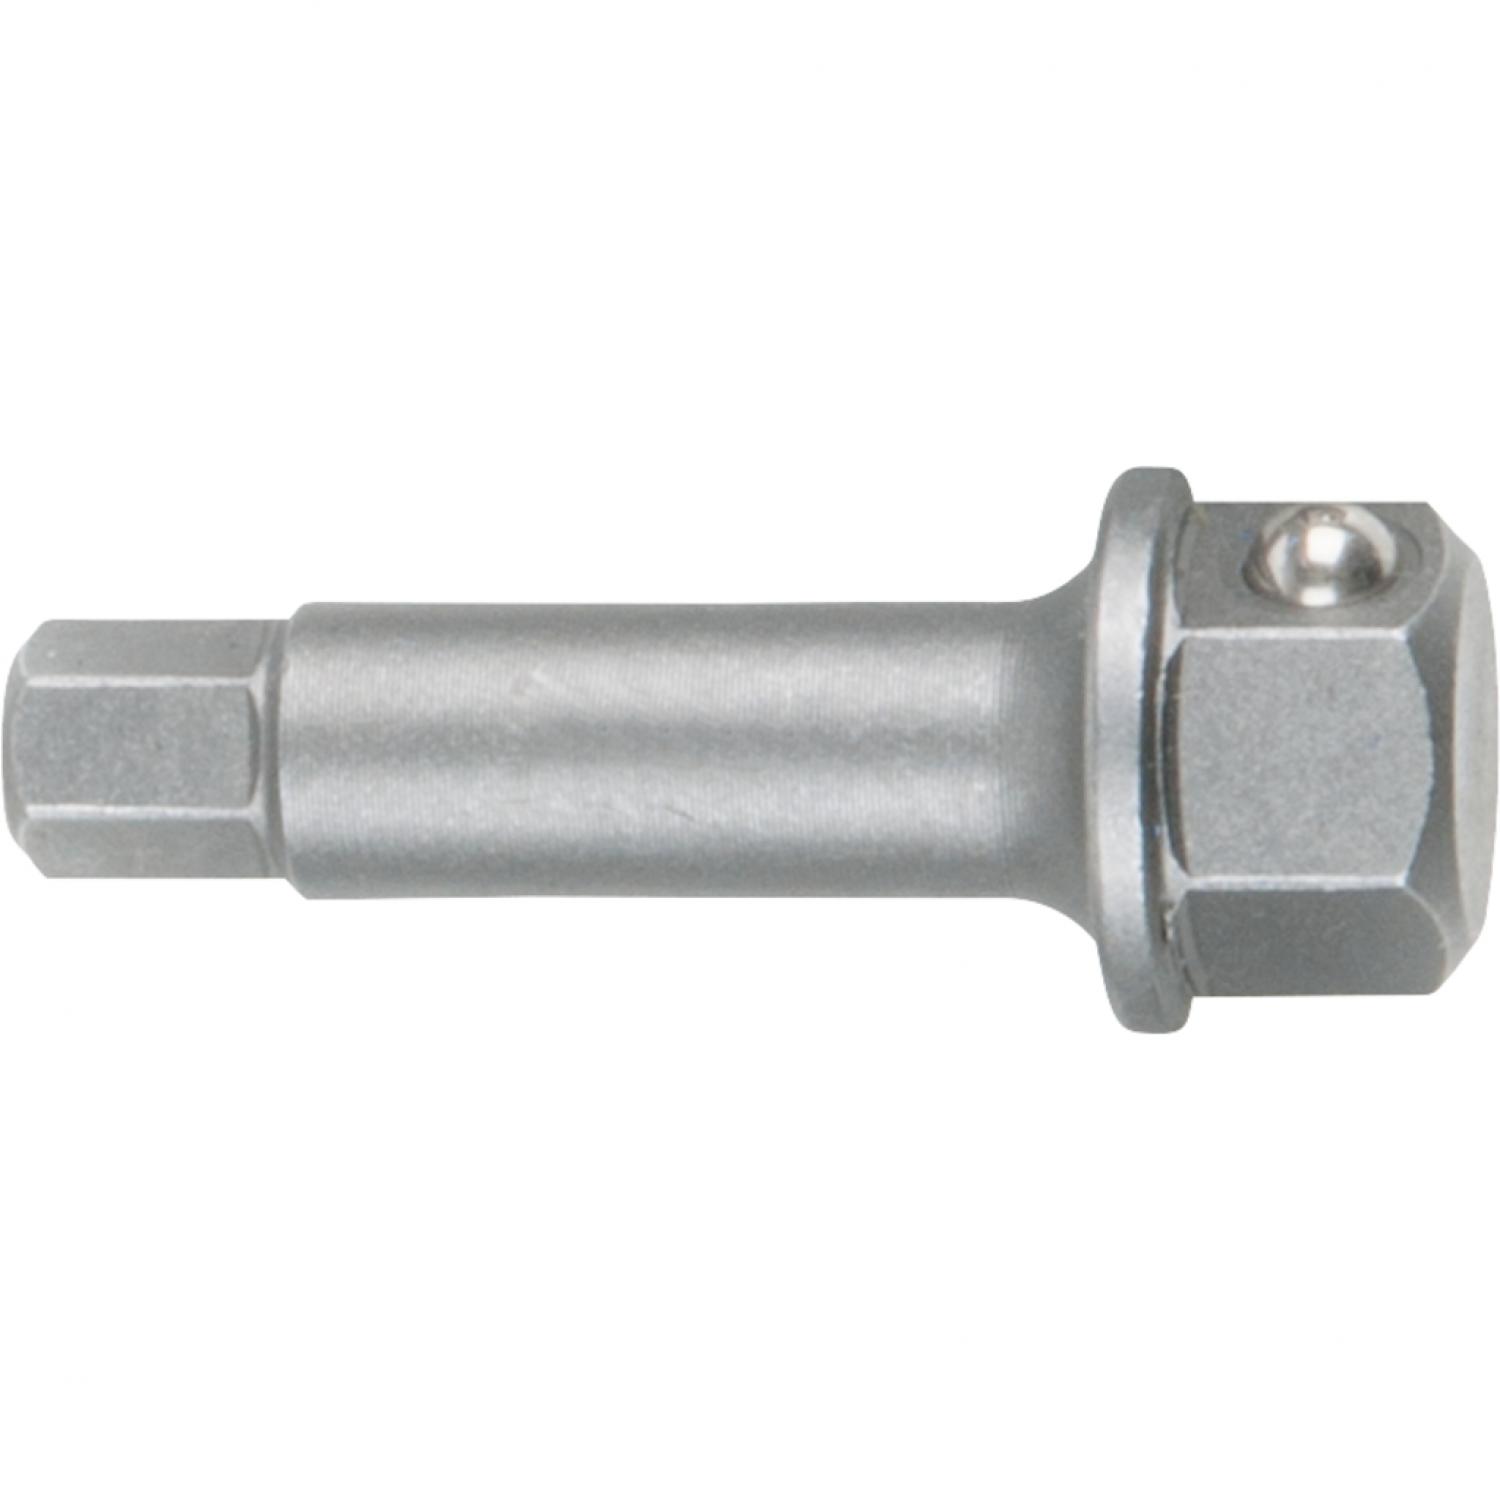 Головка для торцового ключа с внутренним шестигранником, 8 мм